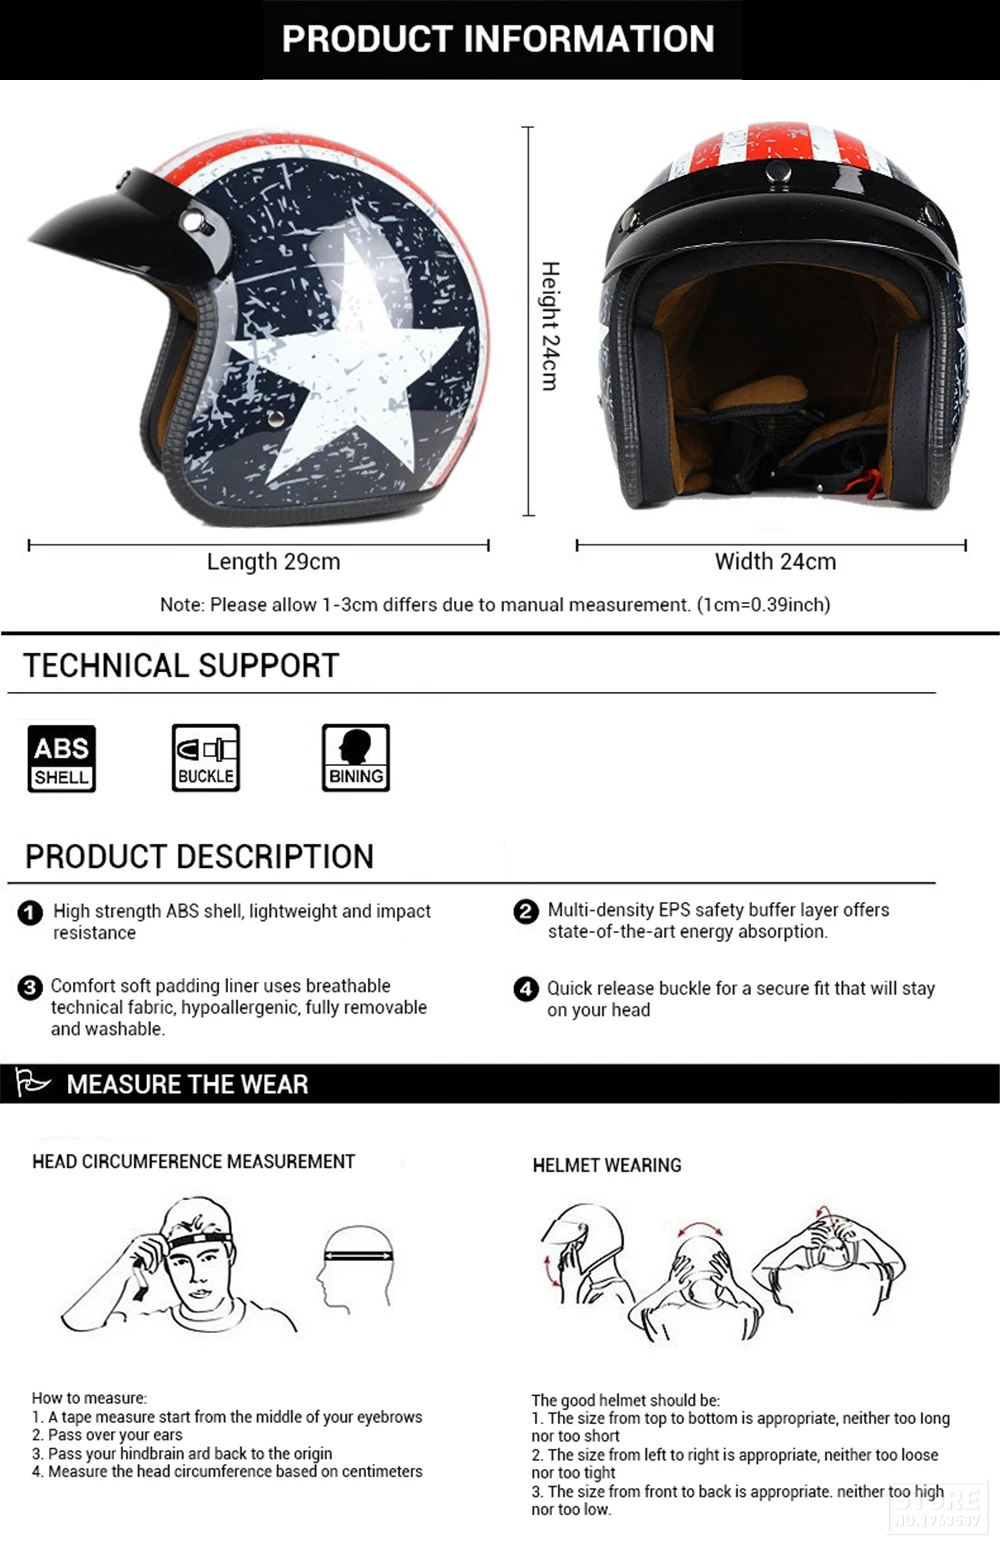 Мотоциклетный шлем из синтетической кожи ретро винтажный круизер чоппер Скутер гонщик Мото шлем 3/4 с открытым лицом Мото шлем в горошек